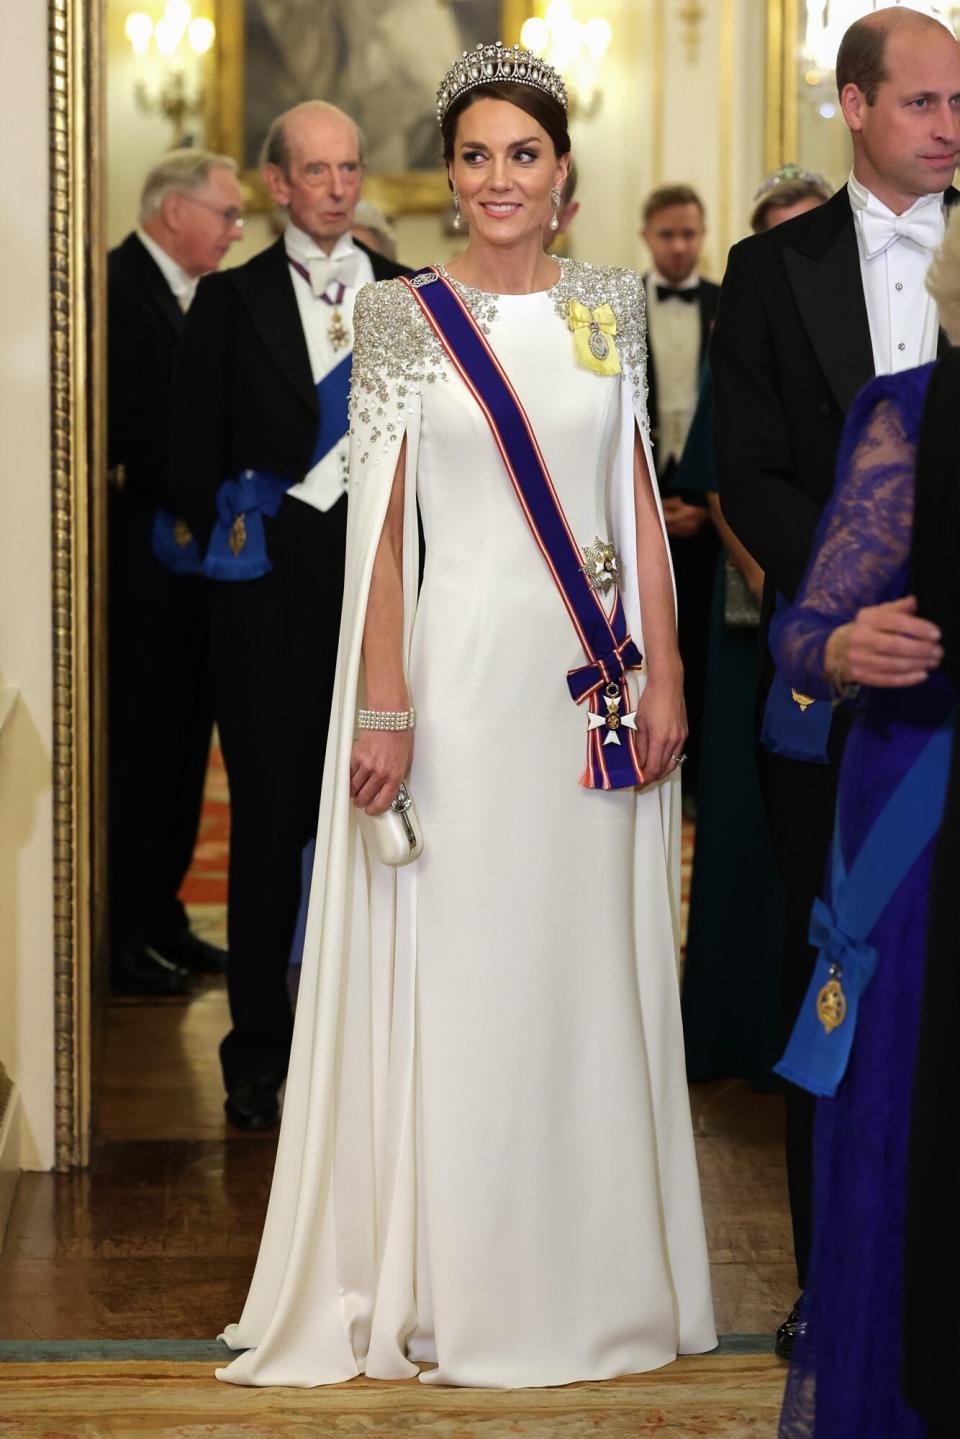 Catherine, Princess of Wales podczas oficjalnego bankietu w Pałacu Buckingham, 22 listopada 2022 r., Londyn, Anglia.  Jest to pierwsza wizyta państwowa w Wielkiej Brytanii z królem Karolem III jako monarchą i pierwsza wizyta państwowa przywódcy Republiki Południowej Afryki od 2010 roku.